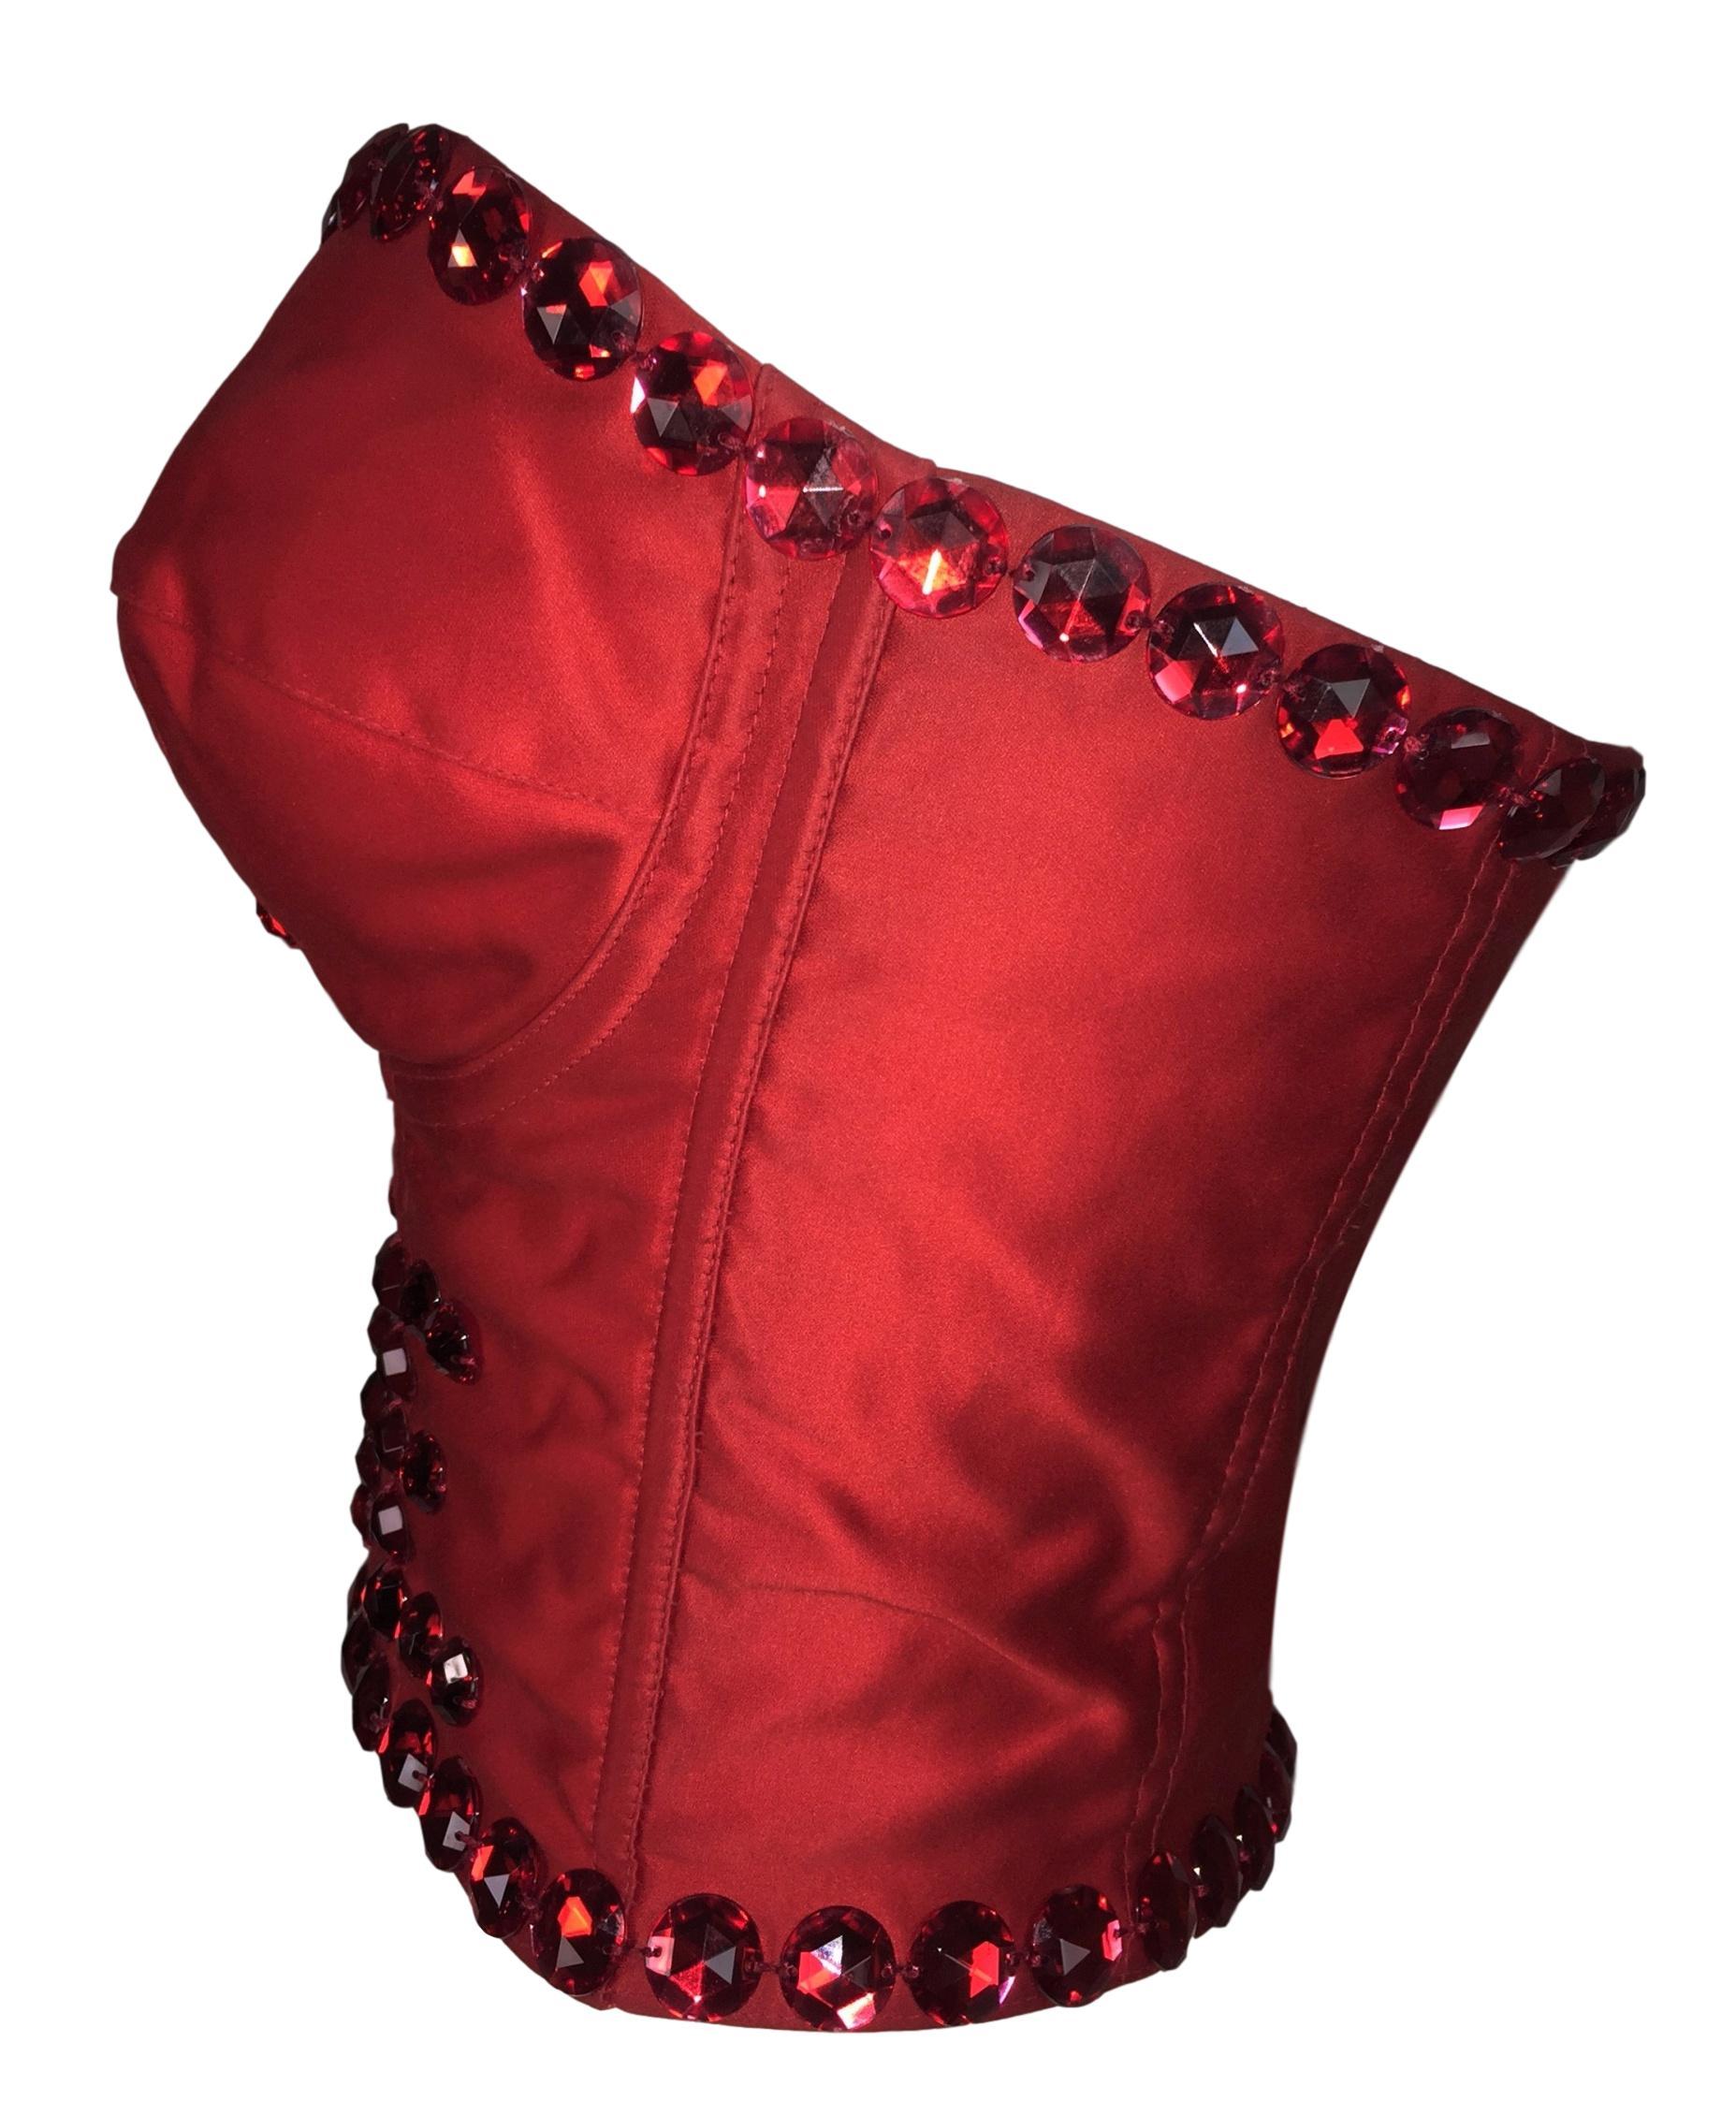 Women's S/S 1992 Dolce & Gabbana Runway SEX & LOVE Red Crystal Corset Bustier Crop Top